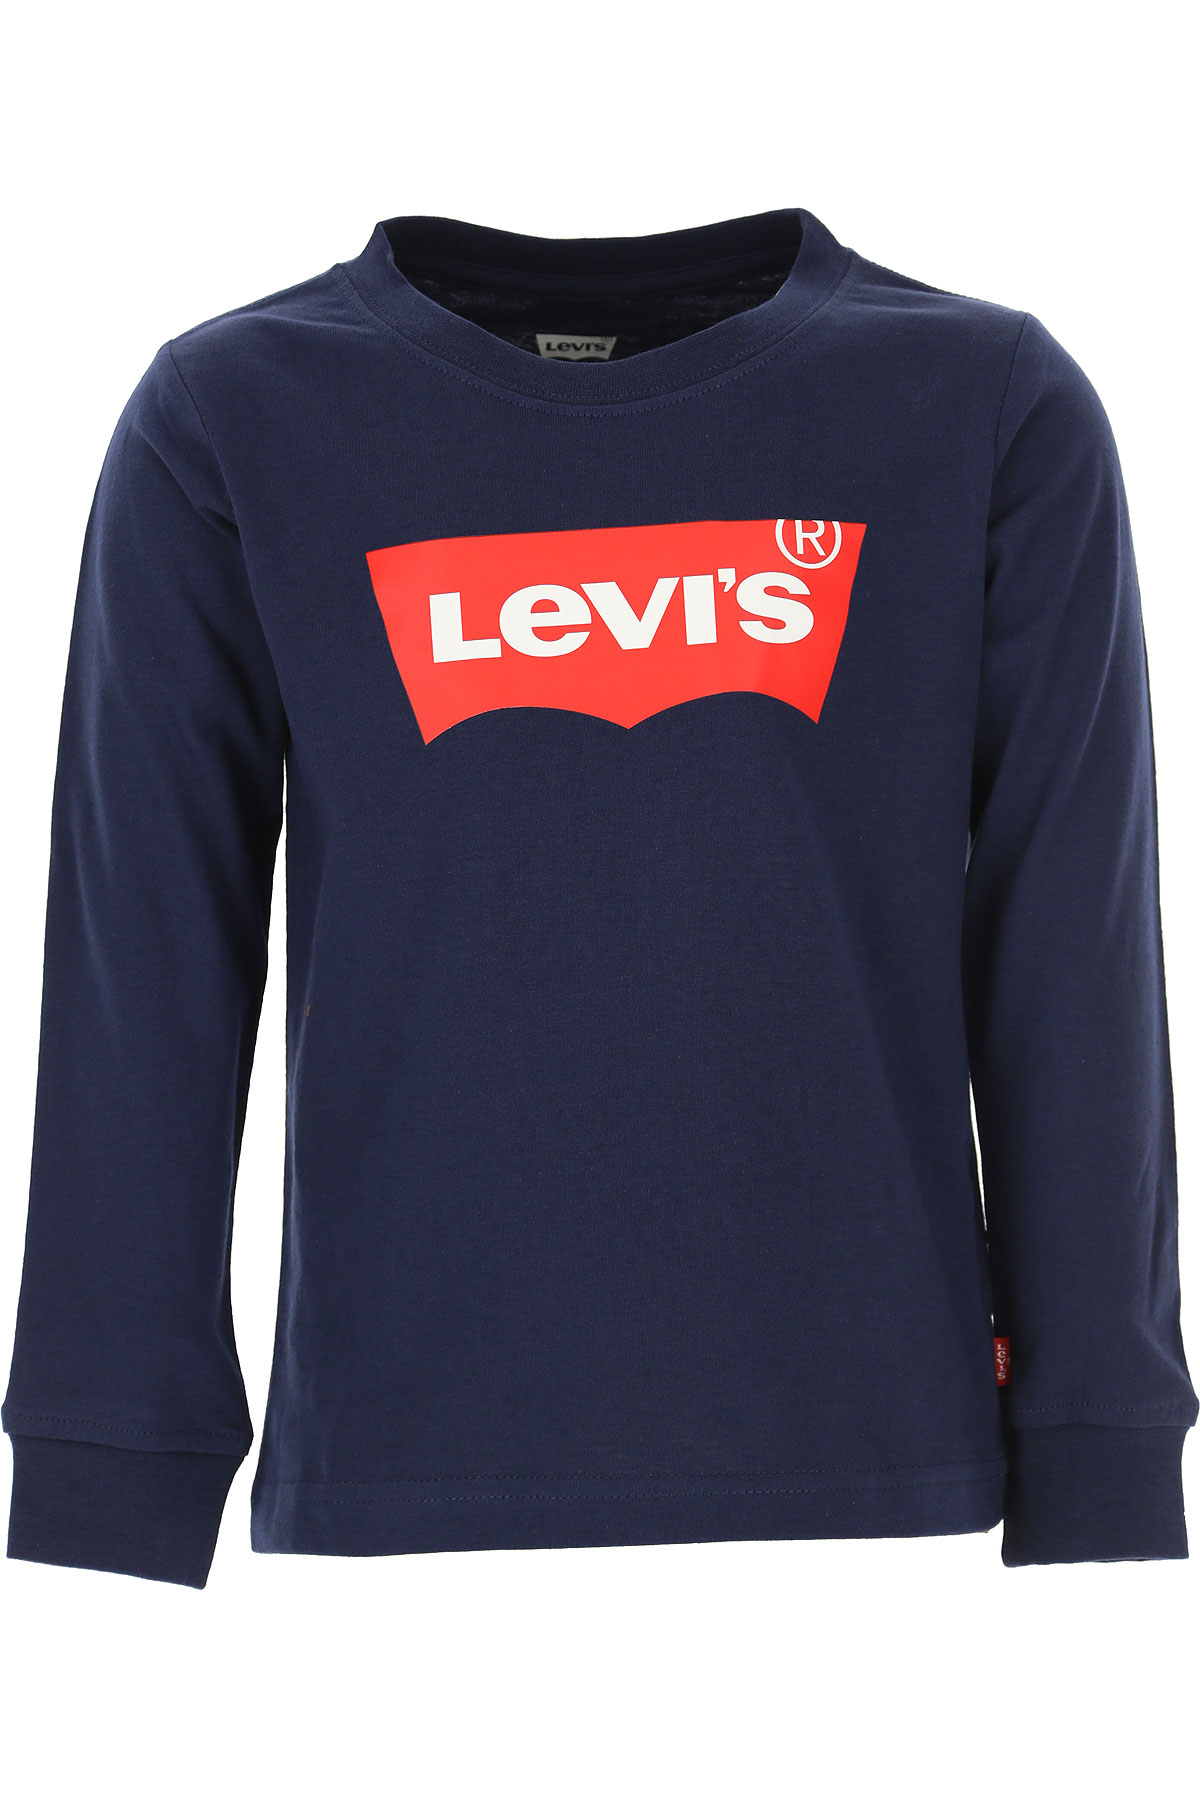 Levis Kinder T-Shirt für Jungen Günstig im Sale, Marine blau, Baumwolle, 2017, 10Y 14Y 16Y 4Y 5Y 6Y 8Y